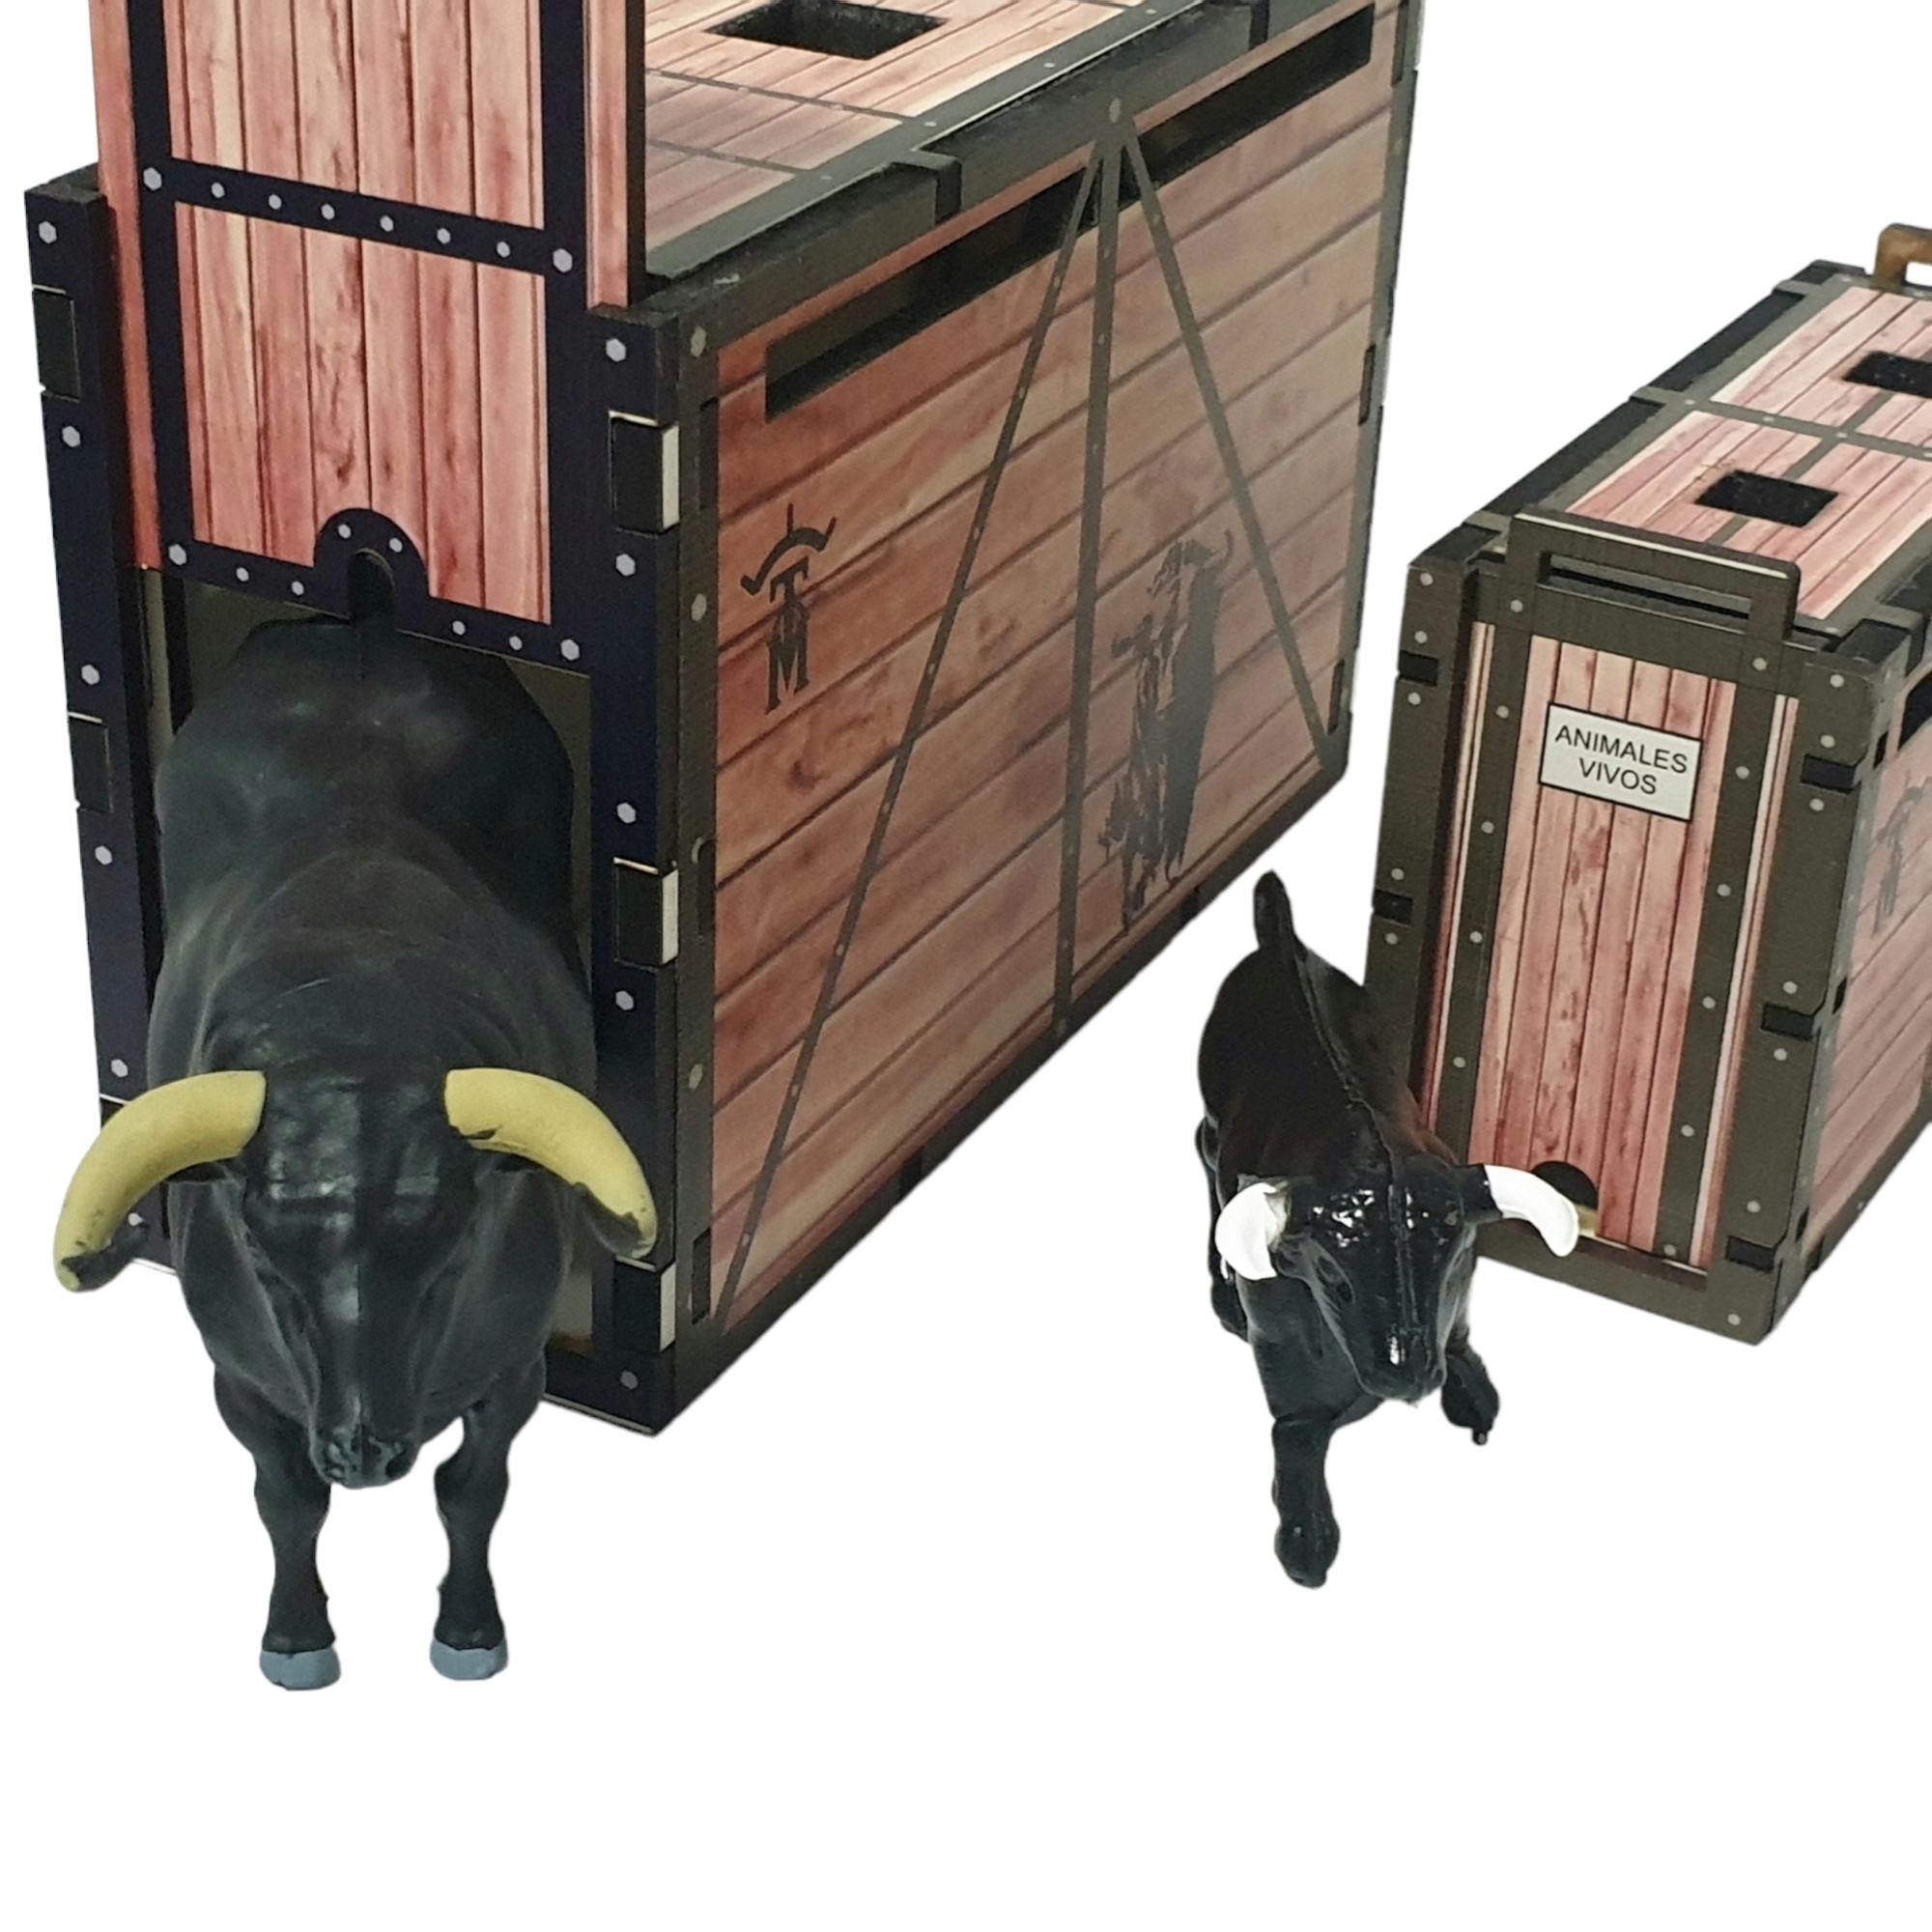 Toro Bravo de lidia negro zaino con cajon de transporte color madera mas regalo cajon o toril escala playmobil.